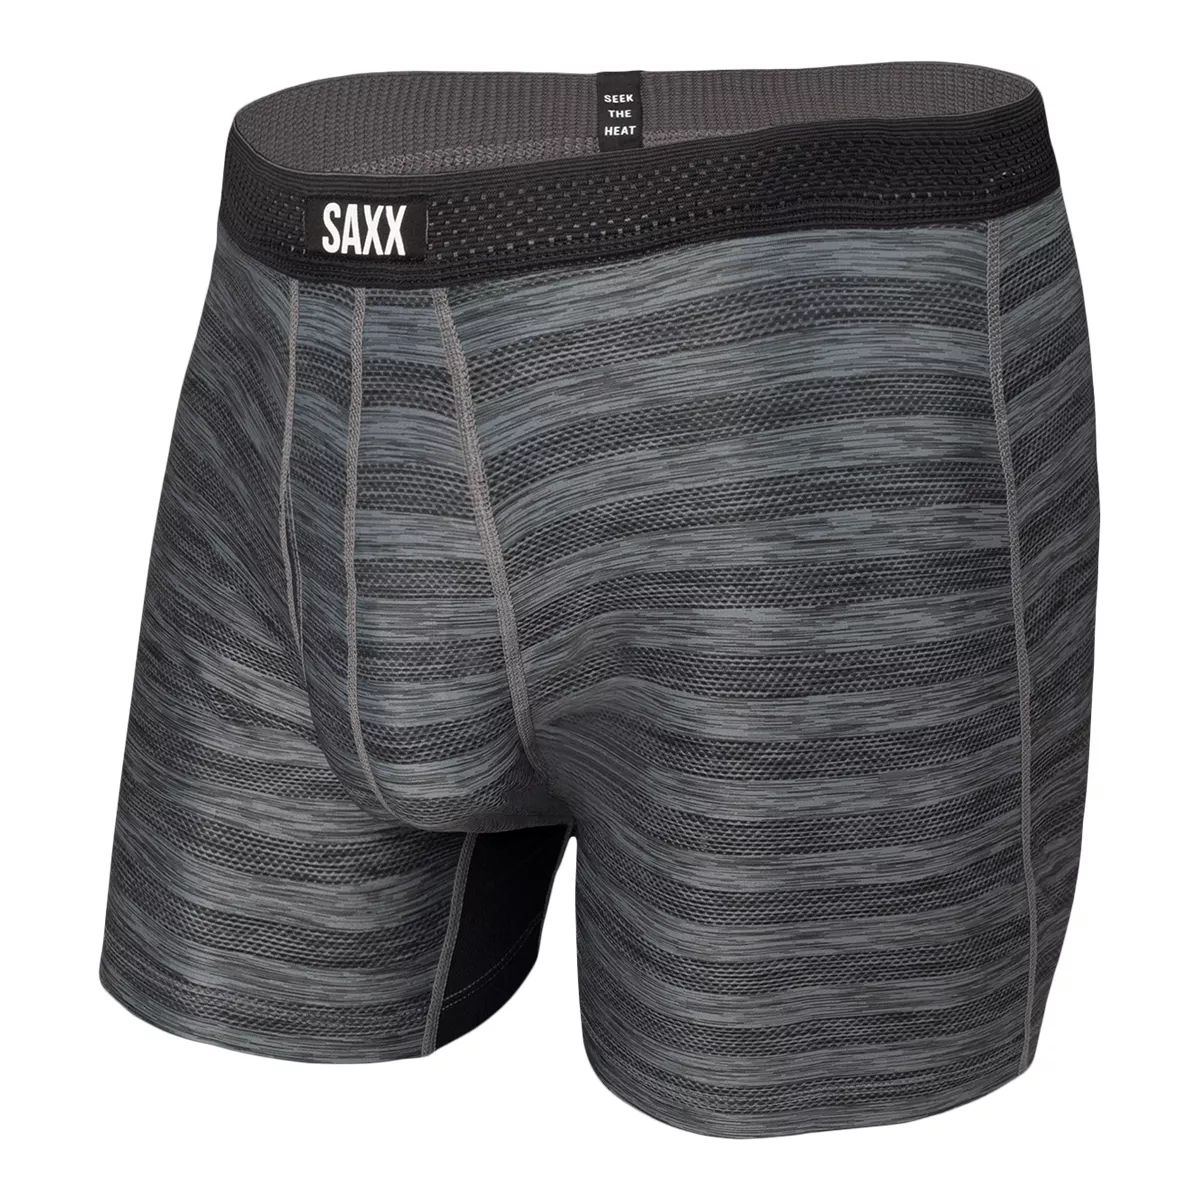 Image of Saxx Droptemp Hotshot Stripe Men's Boxer Brief Workout Underwear Quick-Dry